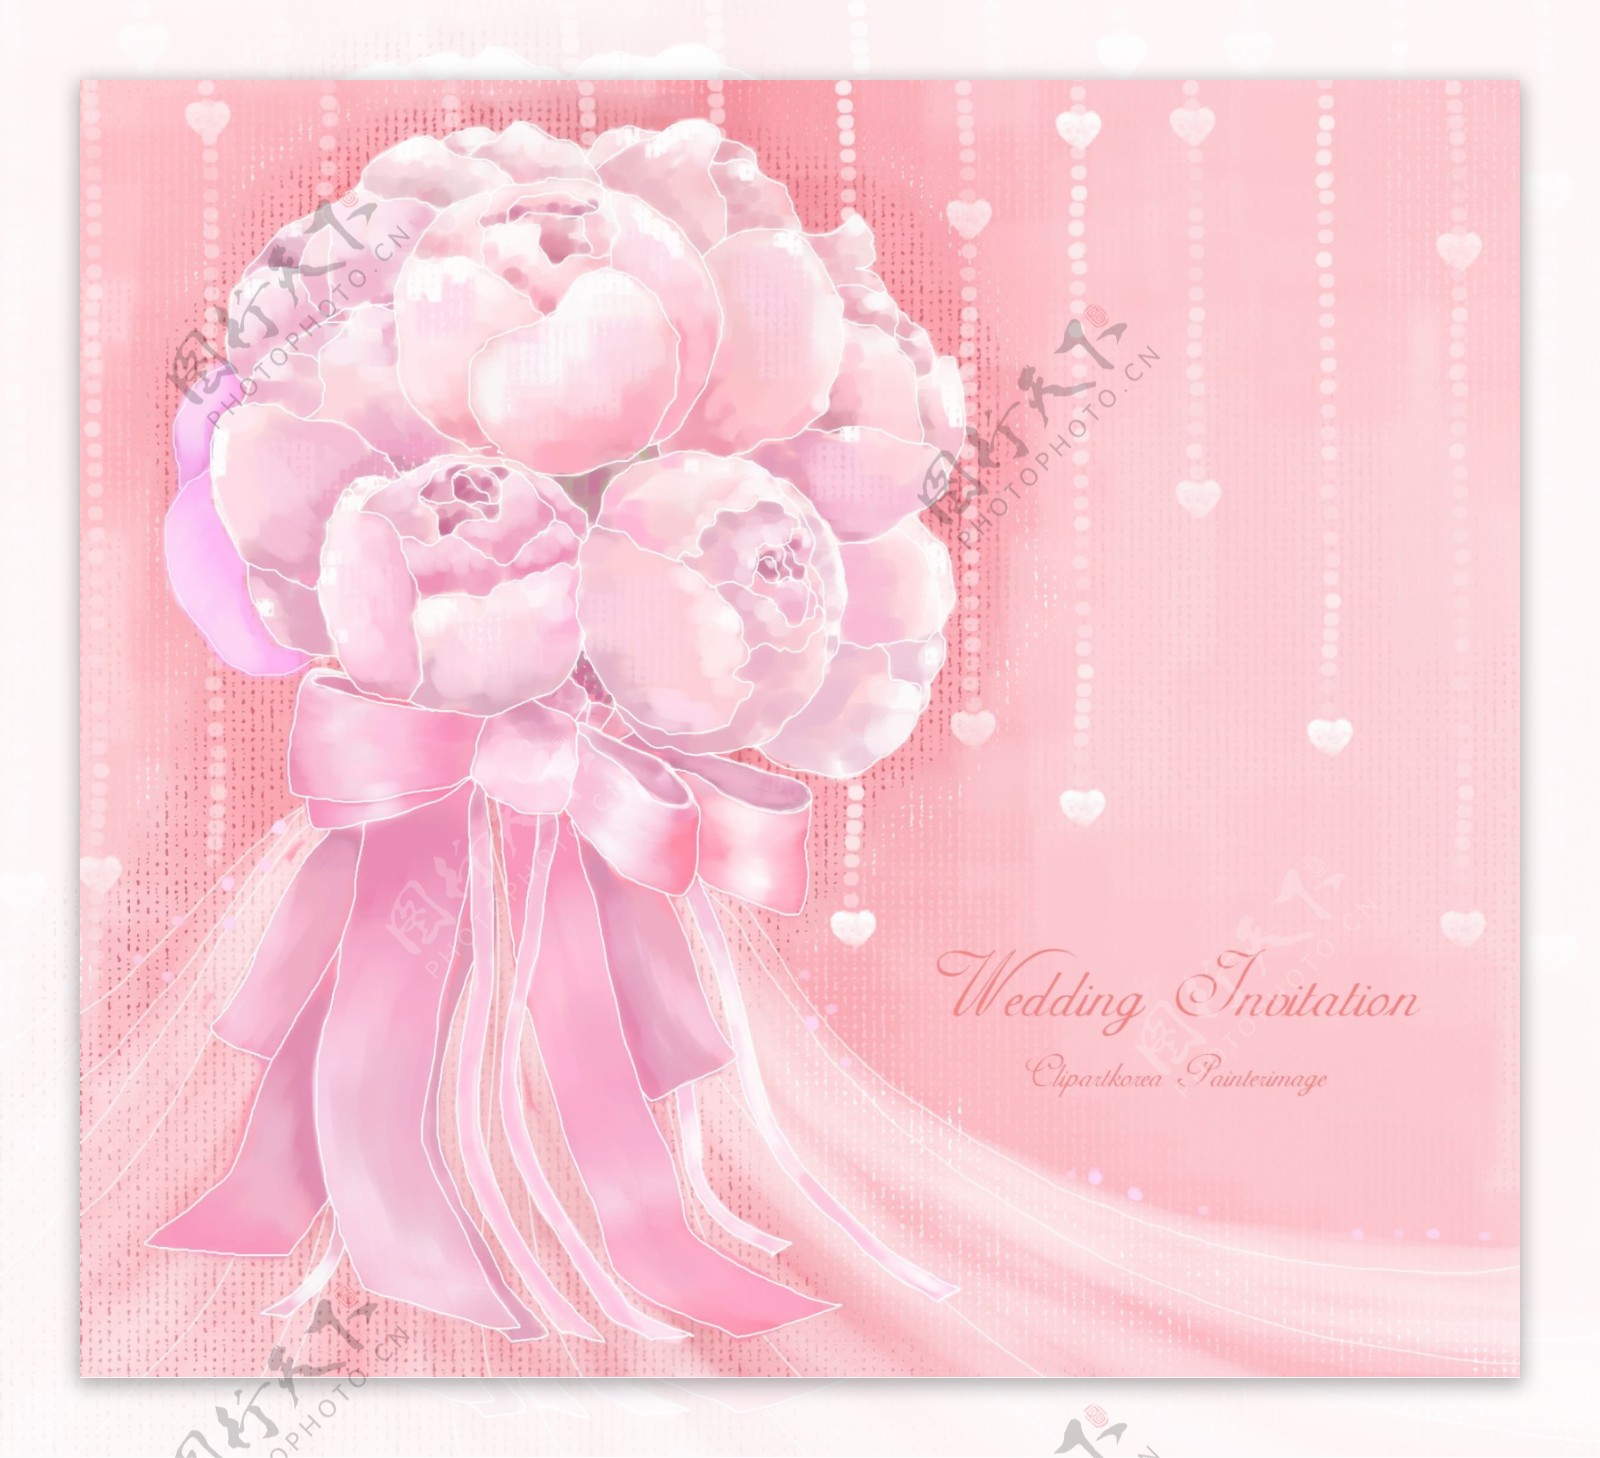 粉色花纹背景图片